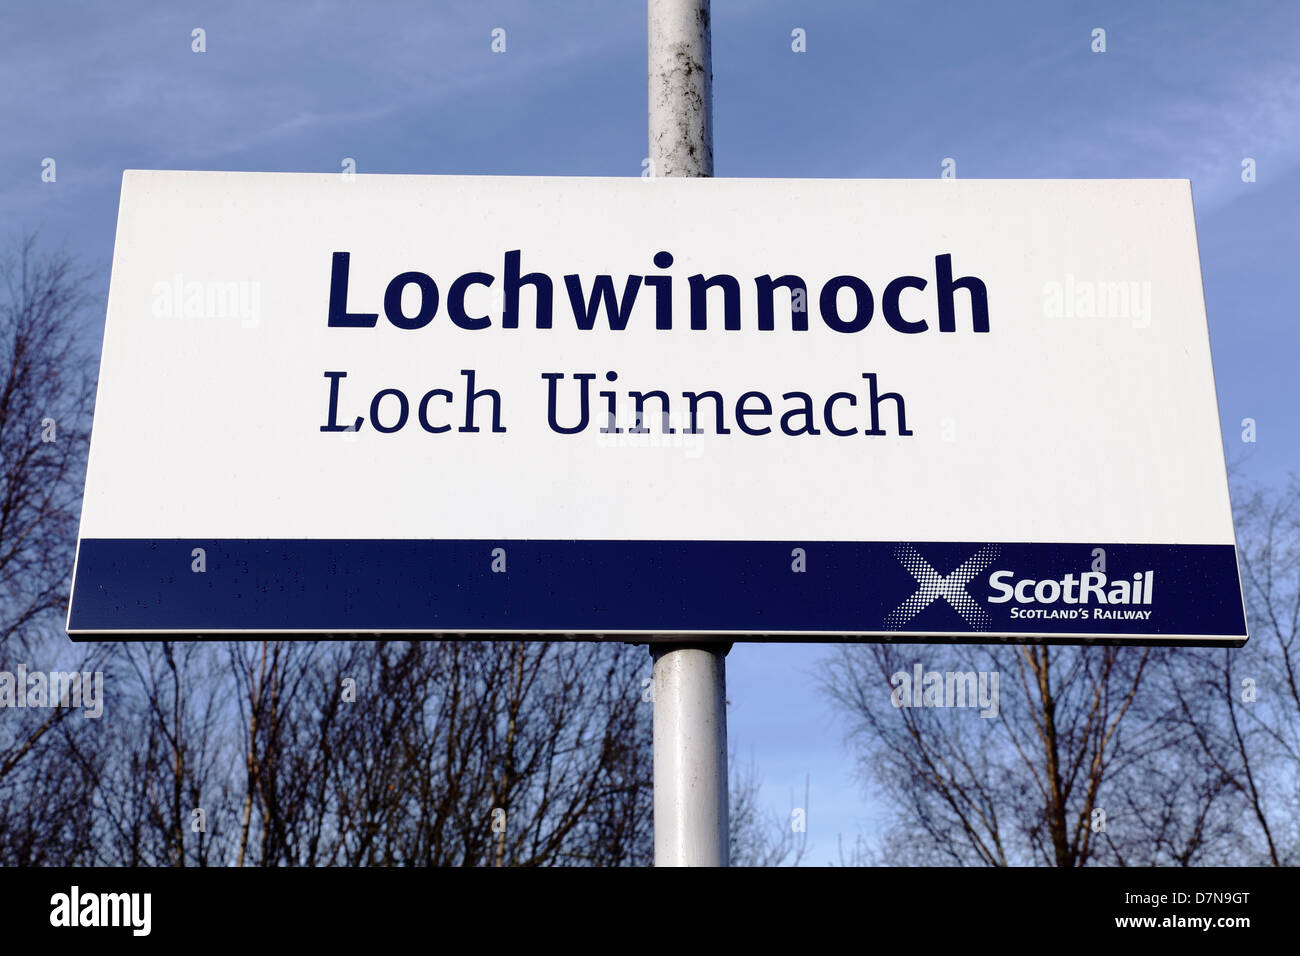 Lochwinnoch Loch Uinneach Scotrail Train Station sign in dual language English / Gaelic, Renfrewshire, Scotland, UK Stock Photo